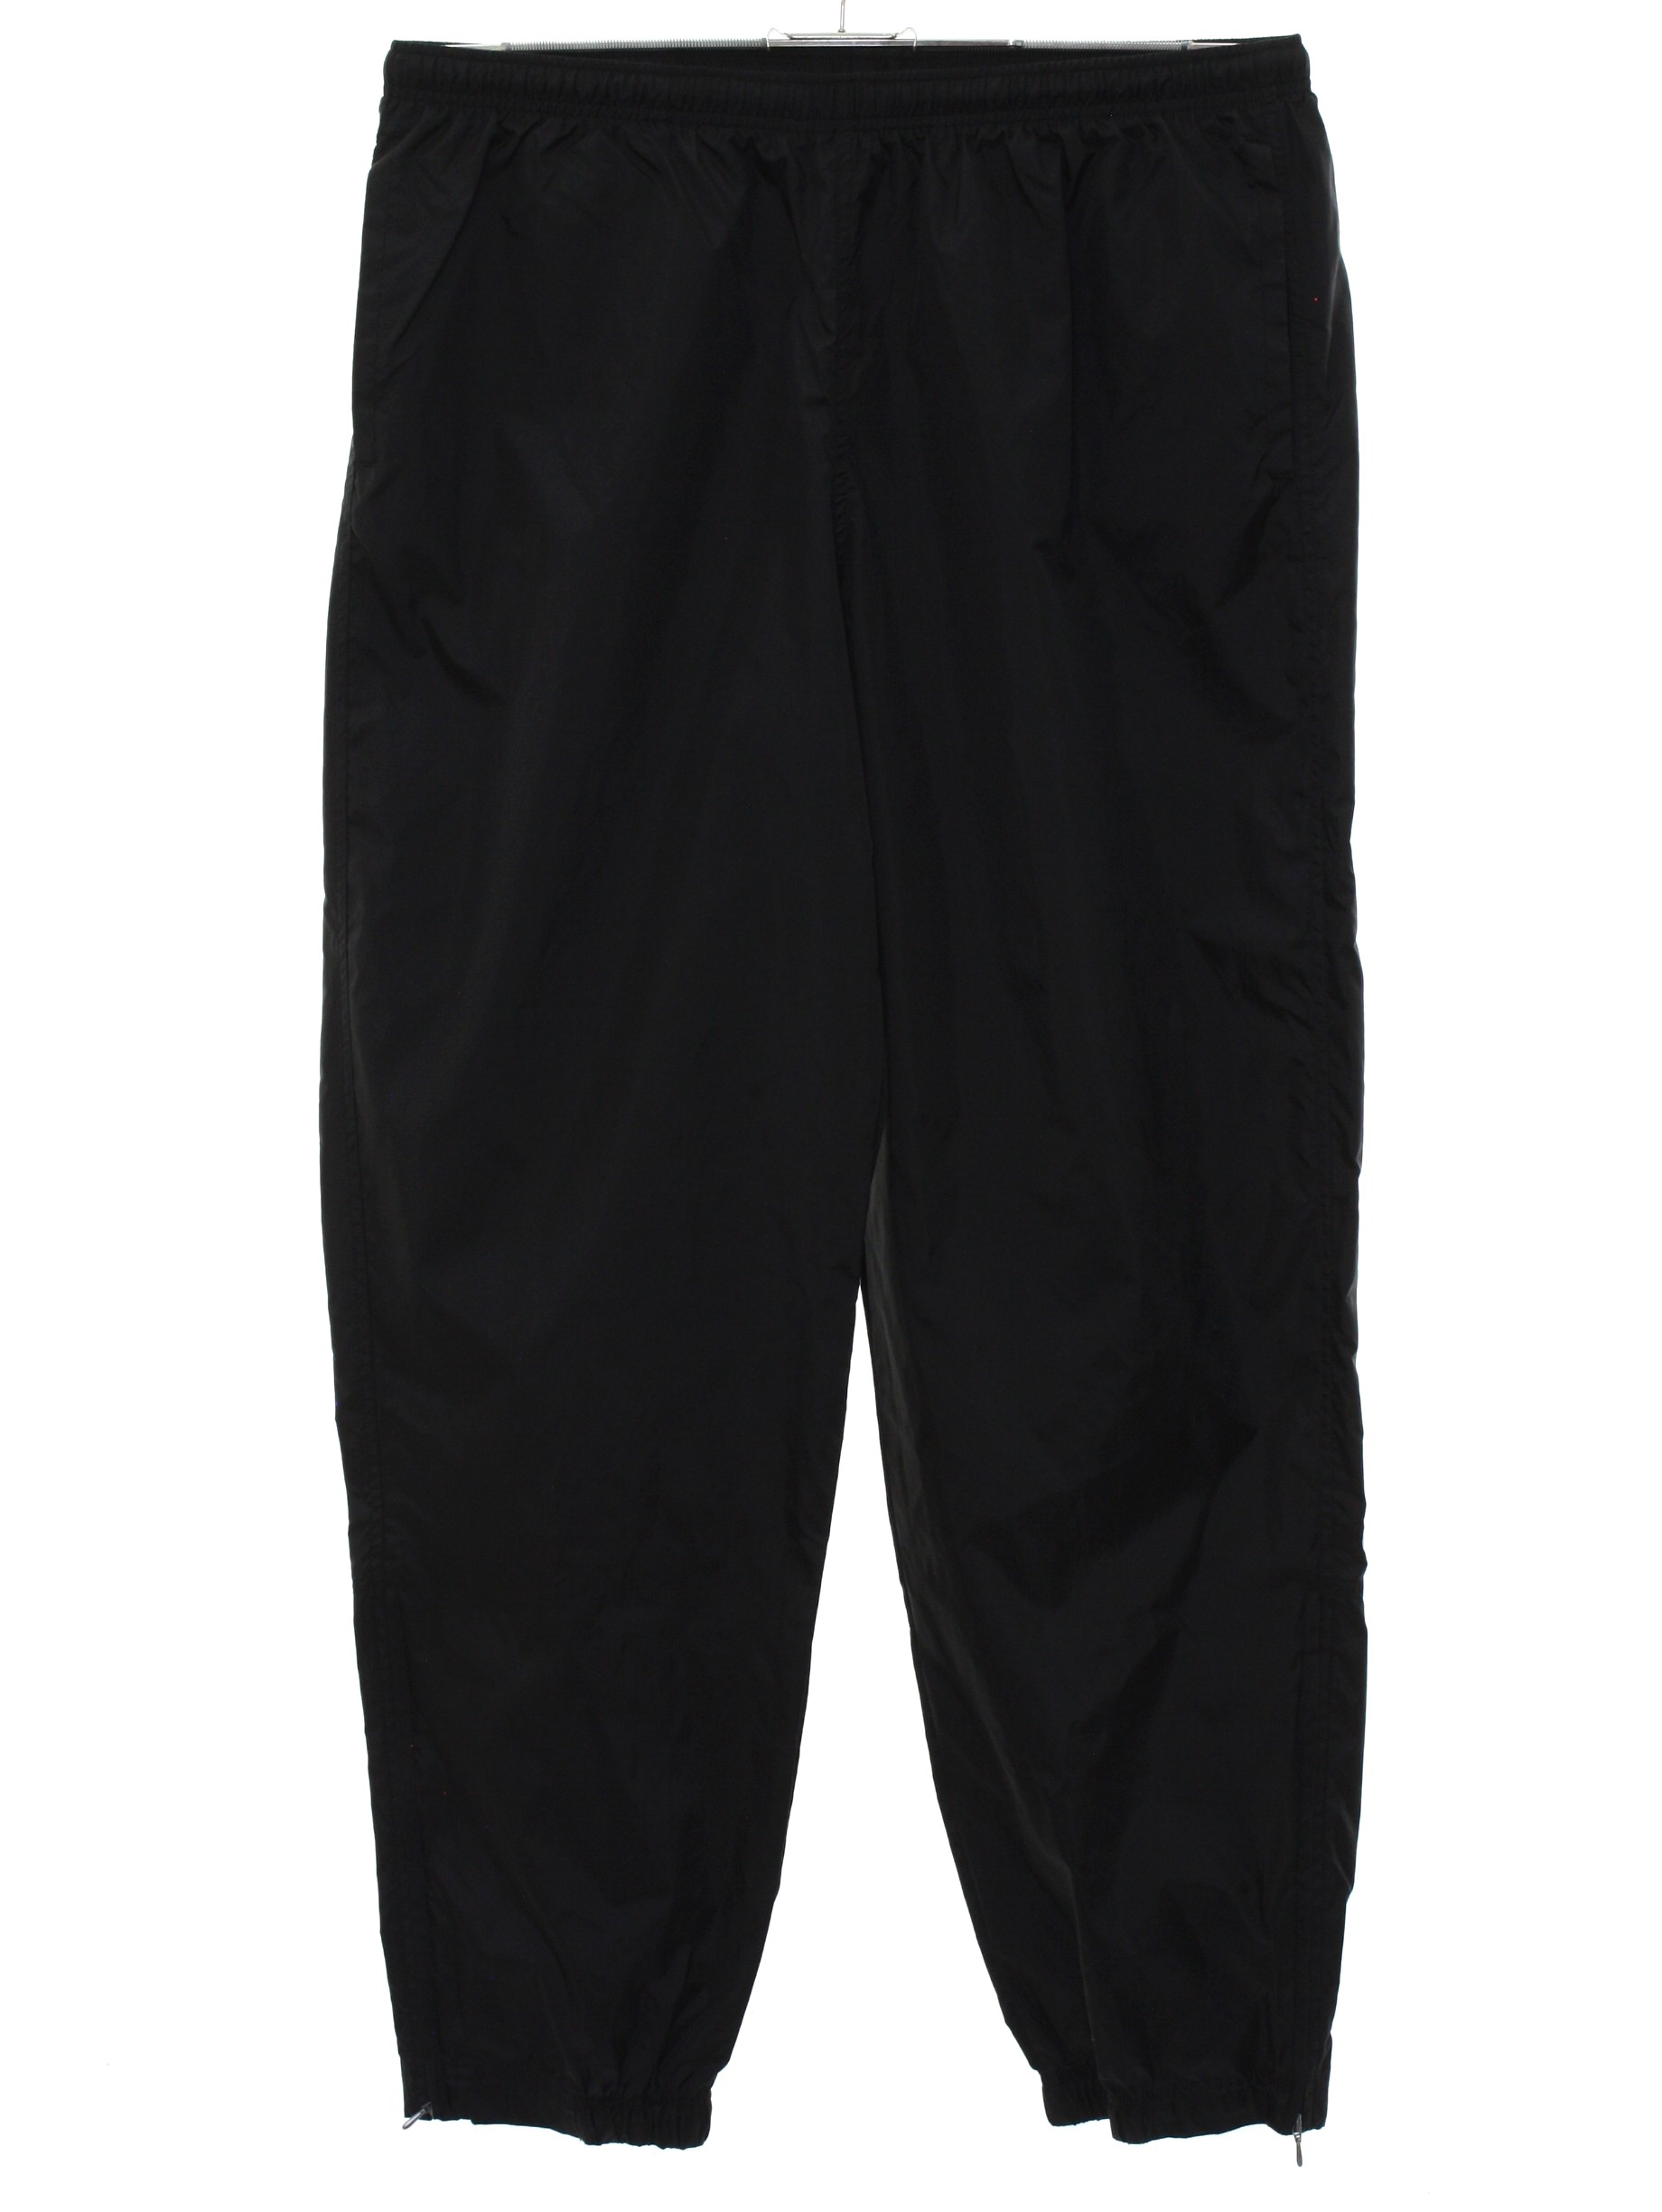 1990's Pants (Nike): 90s -Nike- Mens black solid colored nylon ...